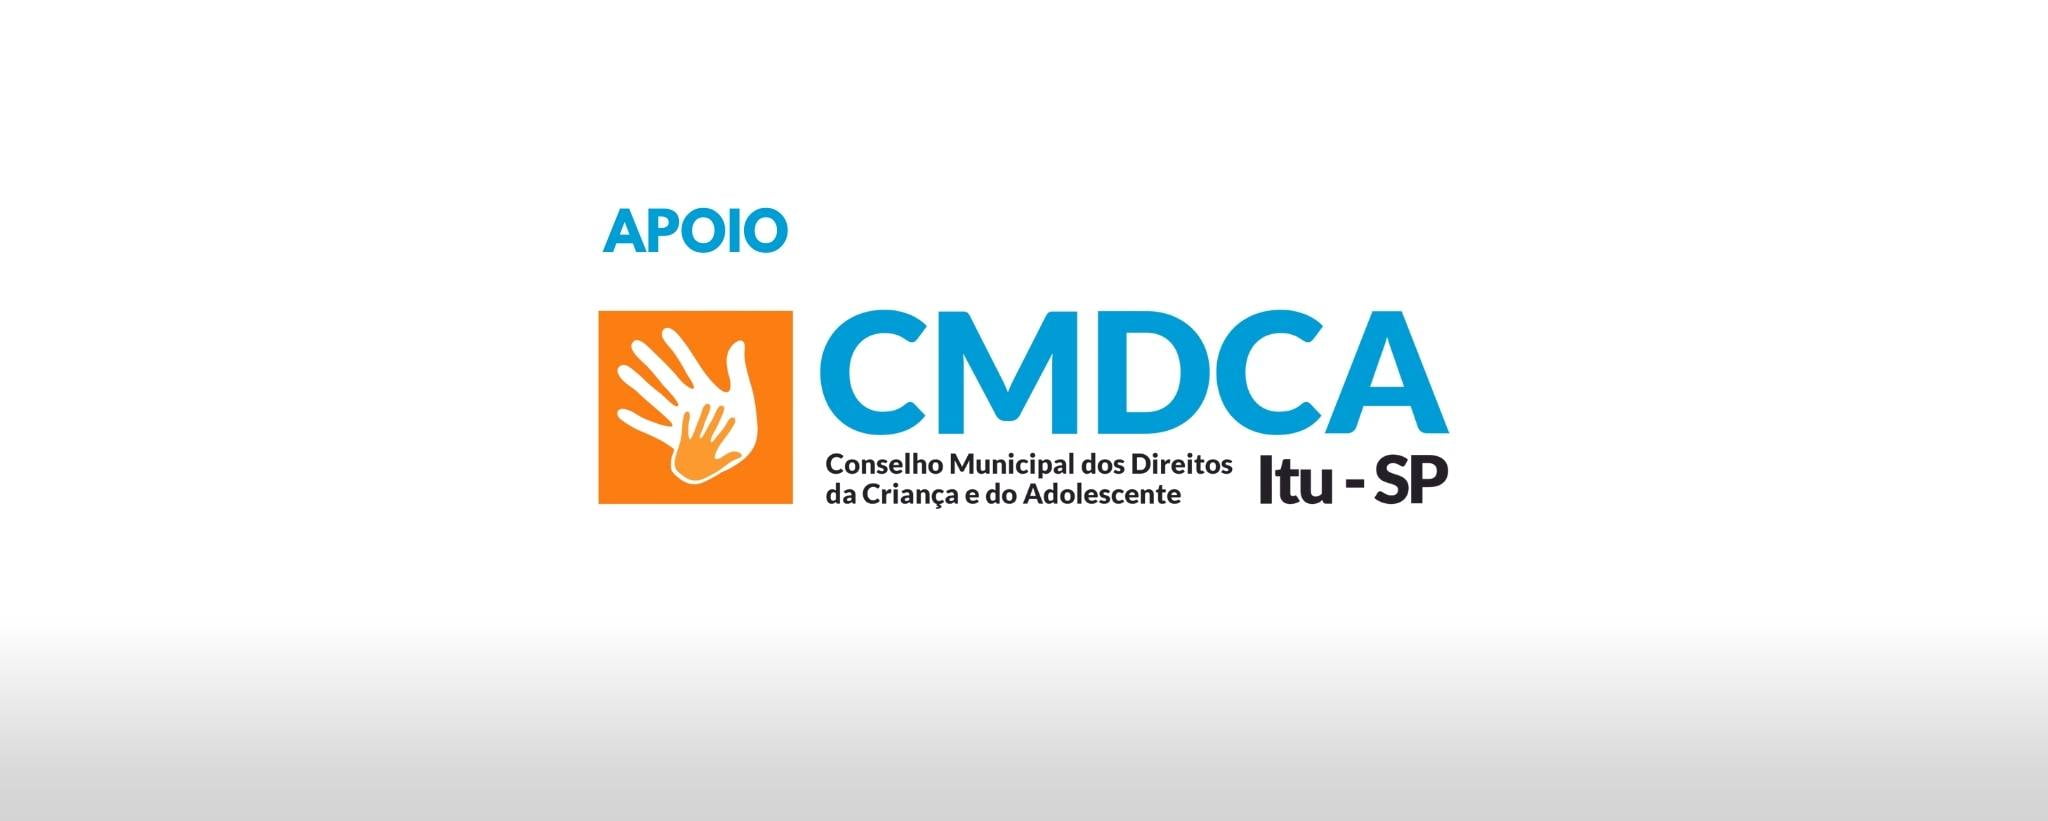 CMDCA - Conselho Municipal da Criança e do Adolescente de Itu-SP -apoio